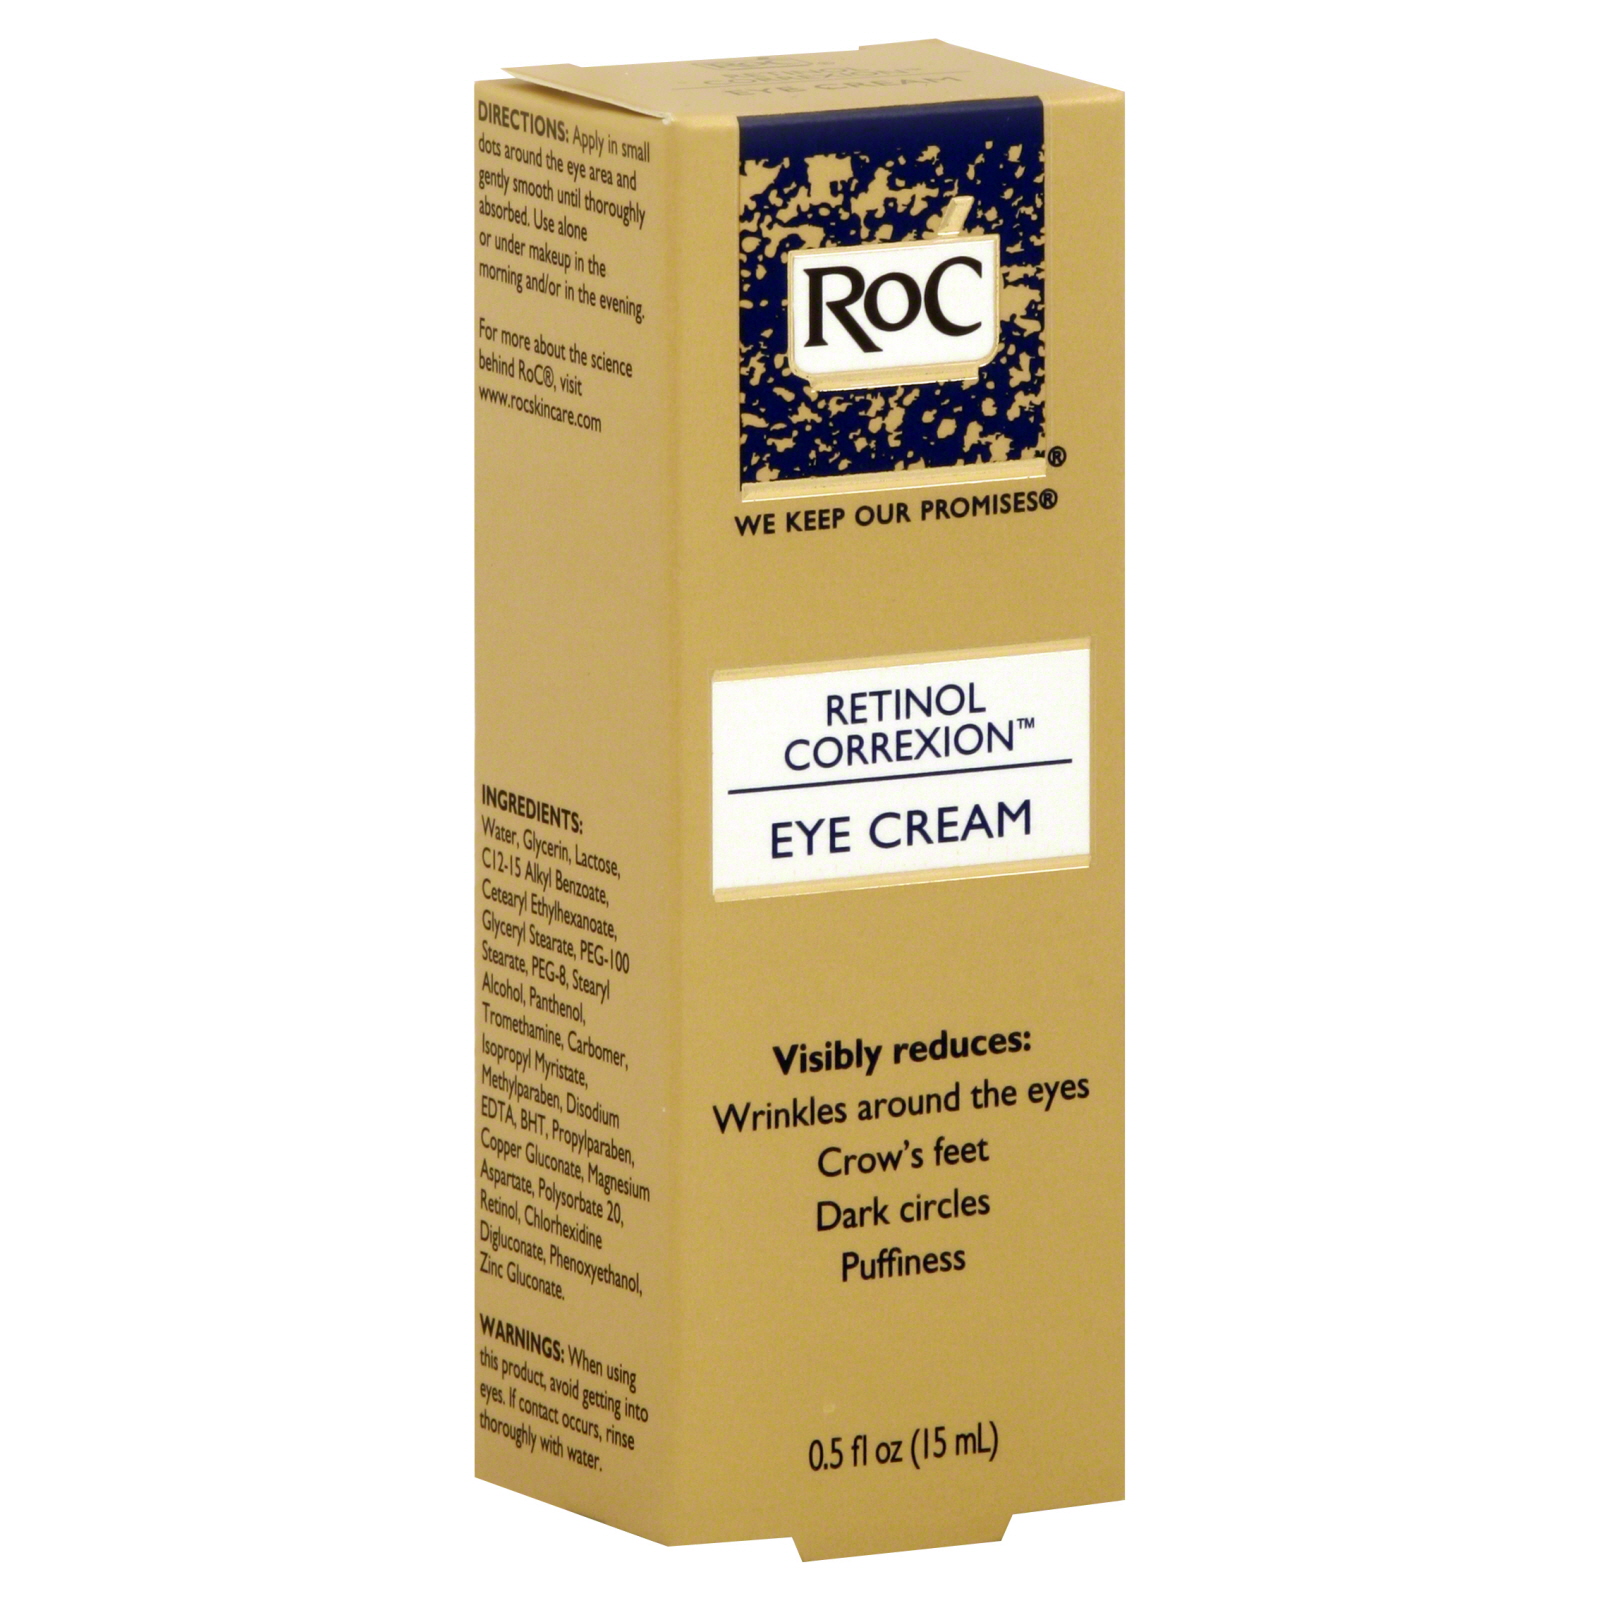 RoC Eye Cream, Retinol Correxion, 0.5 fl oz (15 ml)